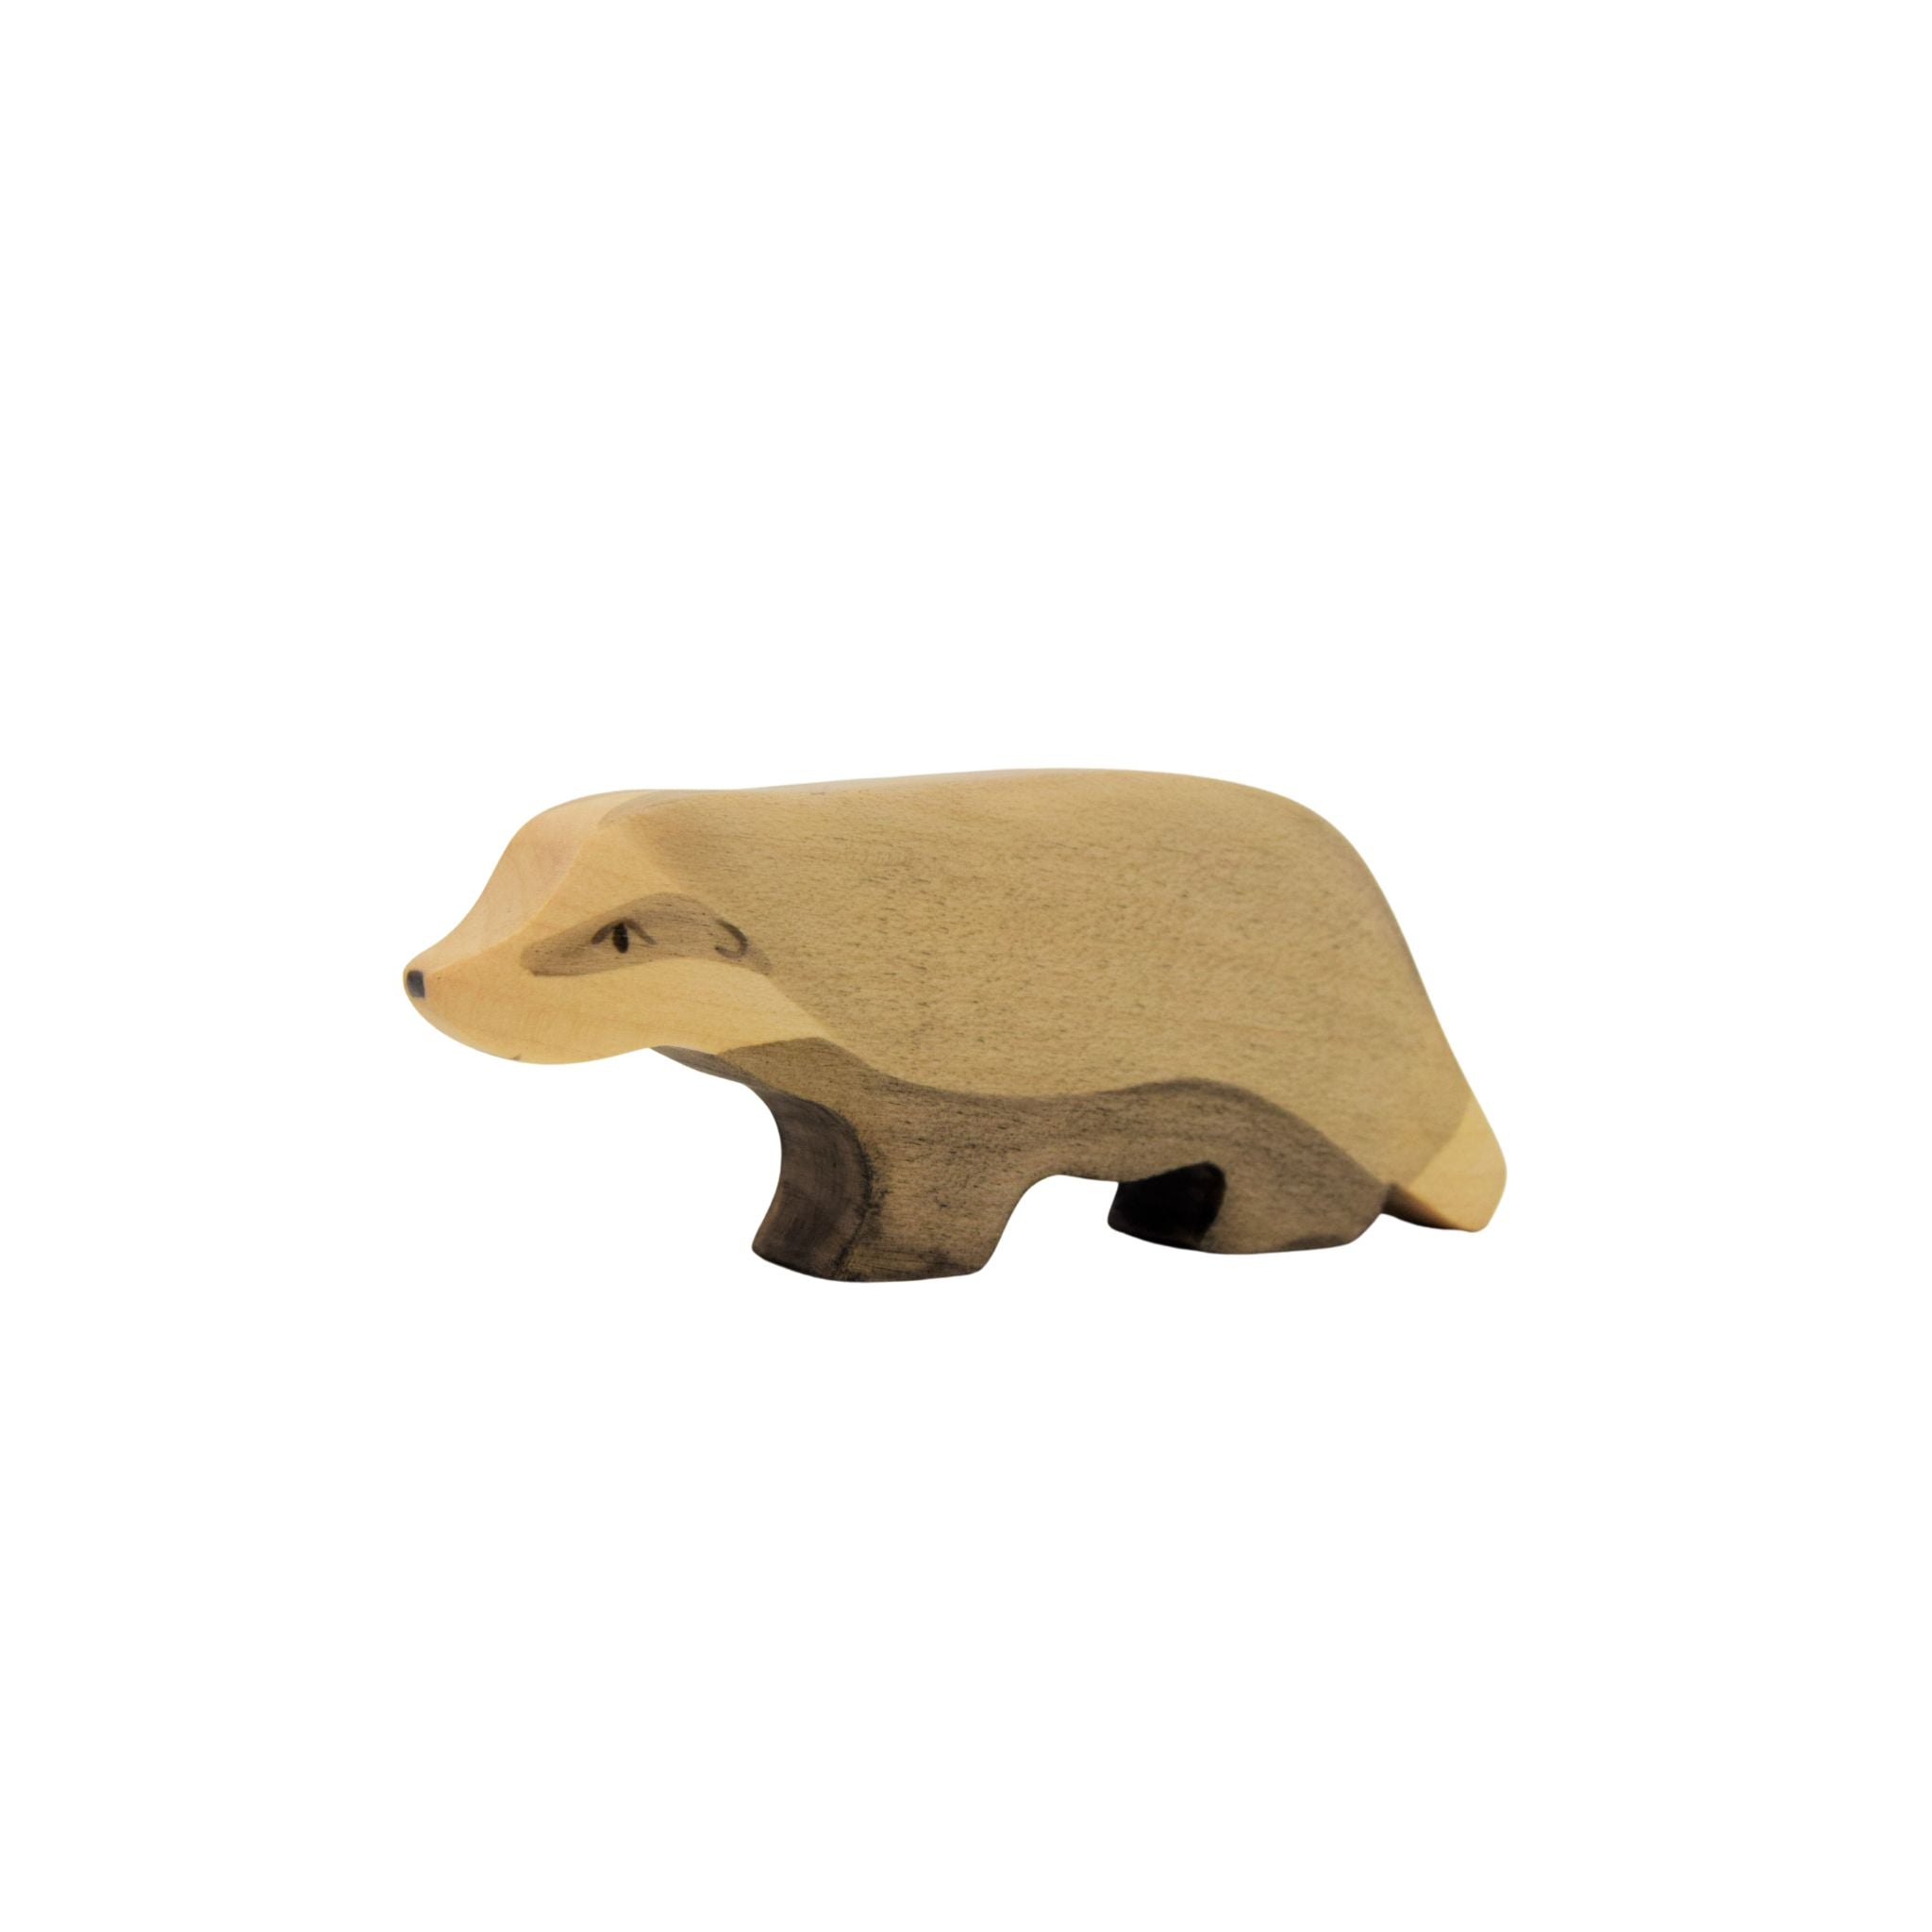 Wooden Badger